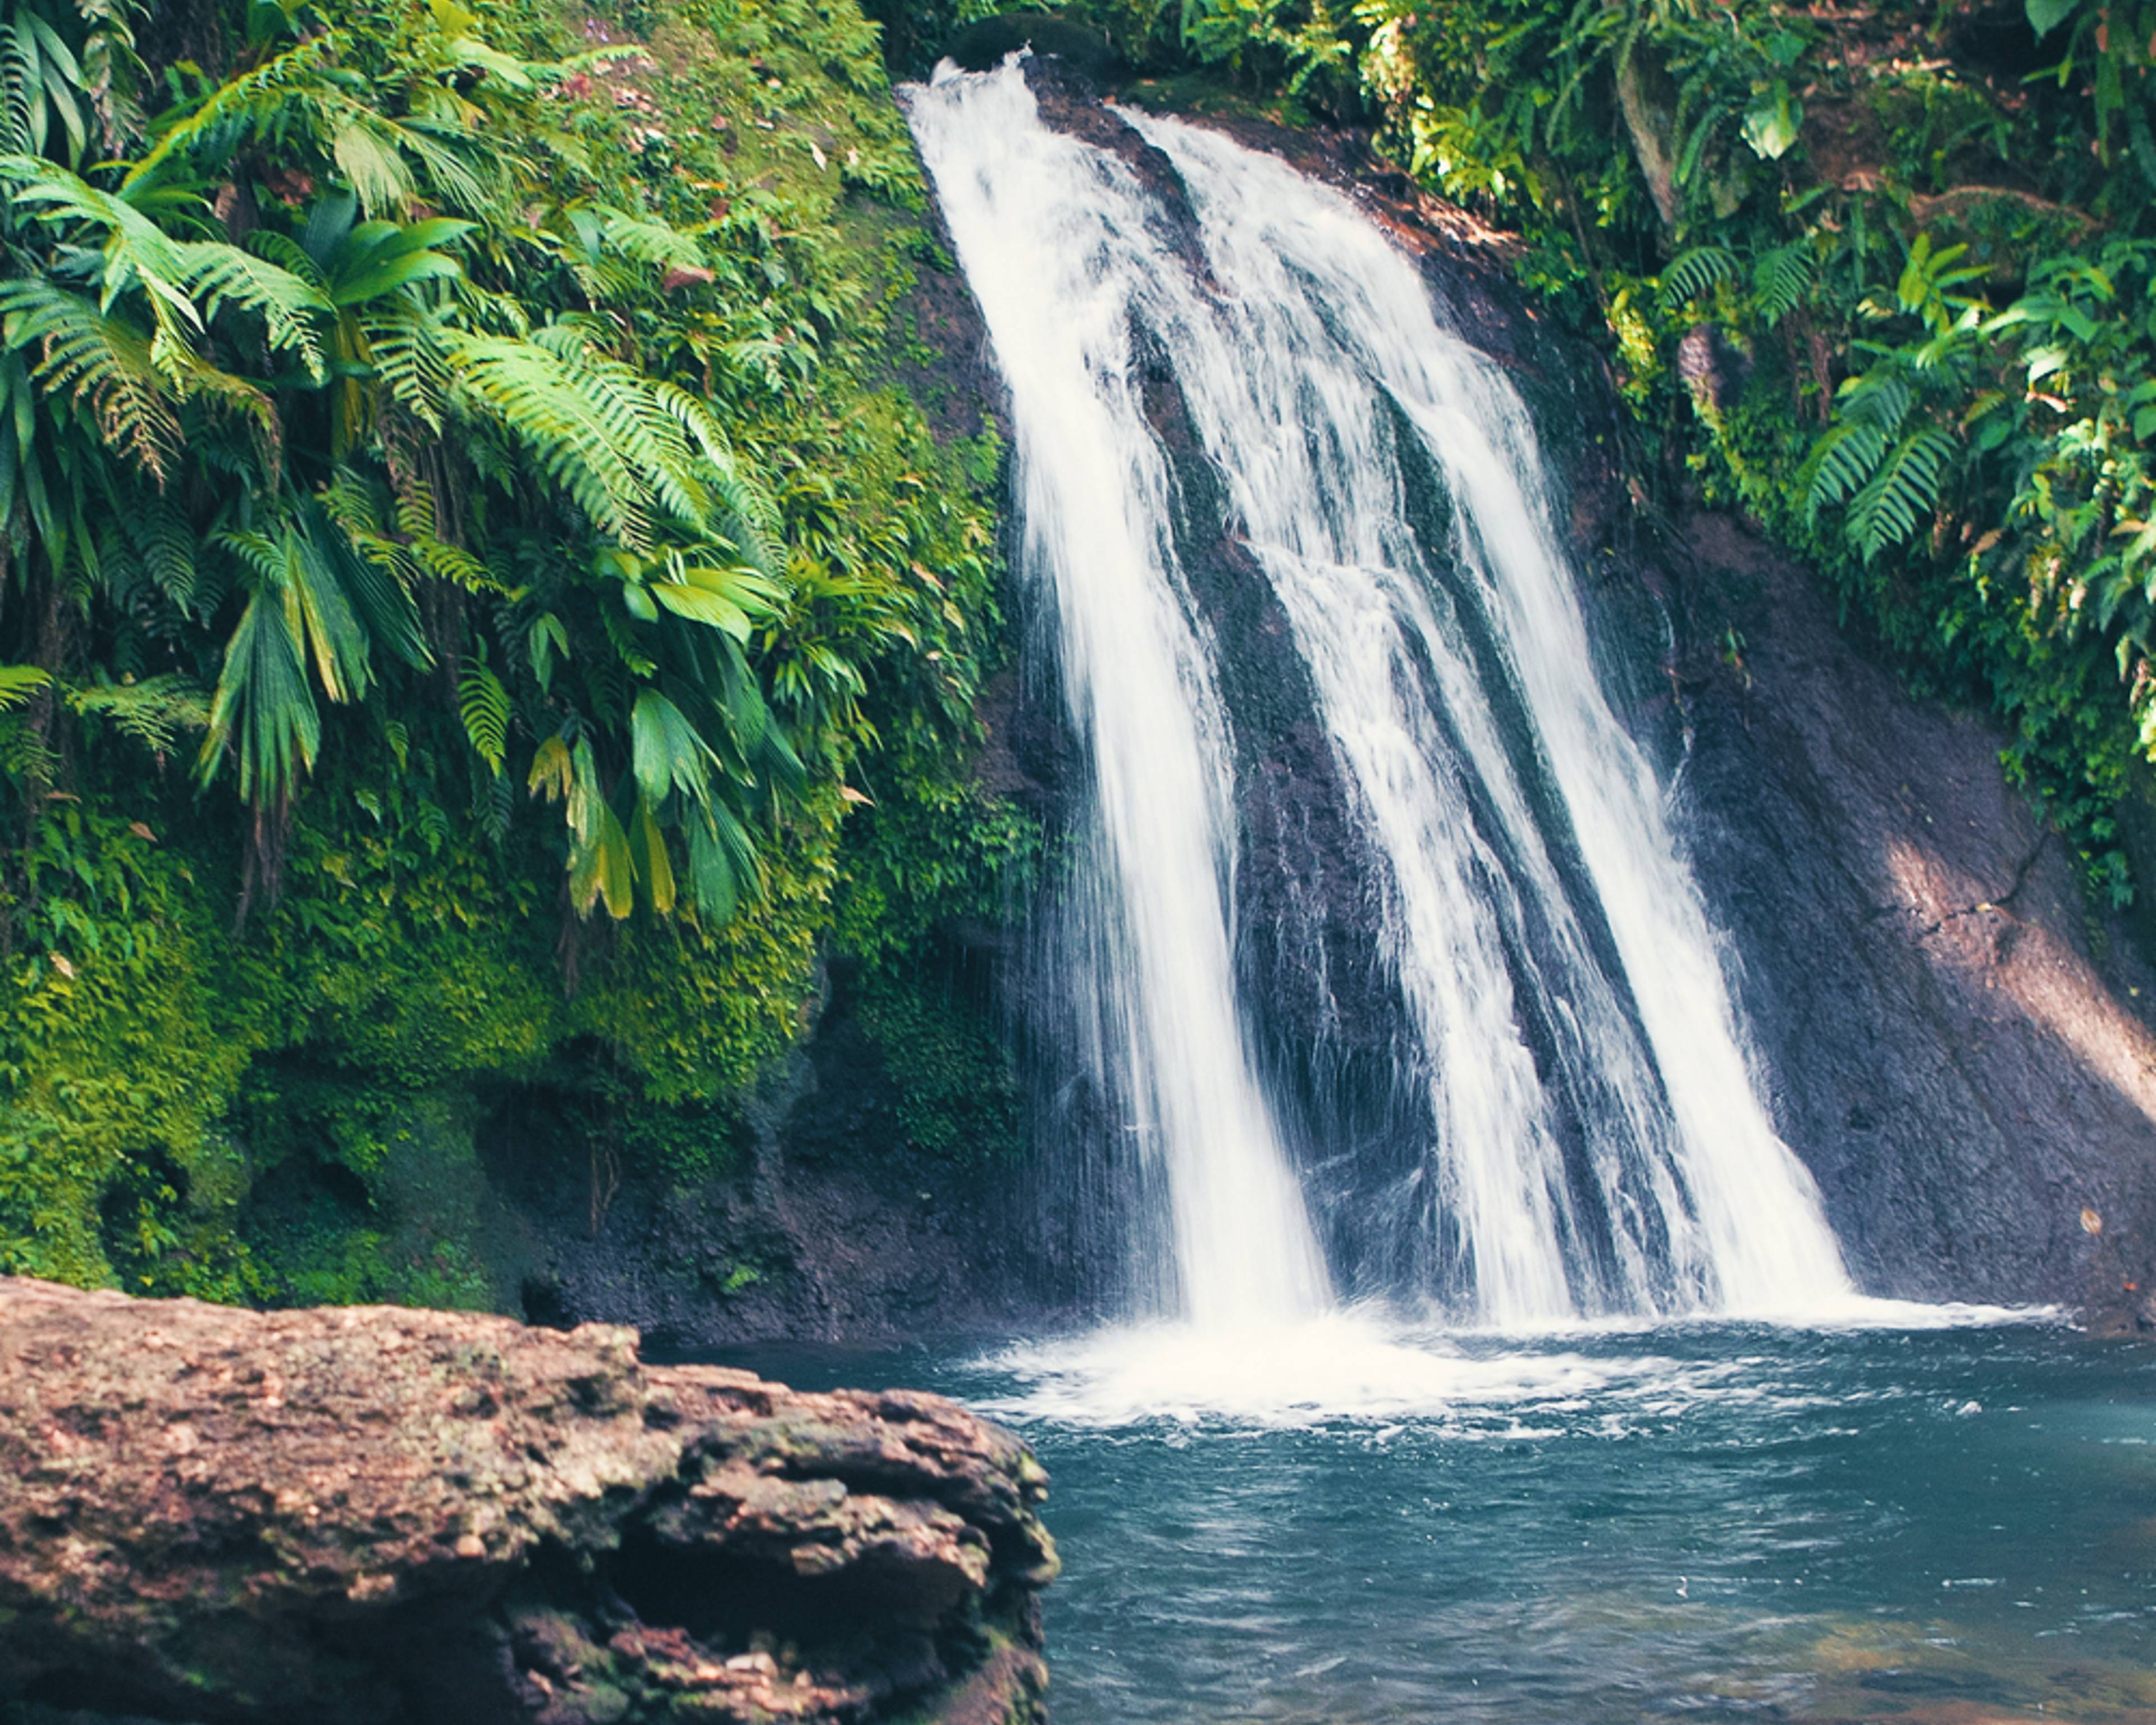 Vacances Nature en Guadeloupe - Circuits sur mesure pour prendre un grand bol d'air